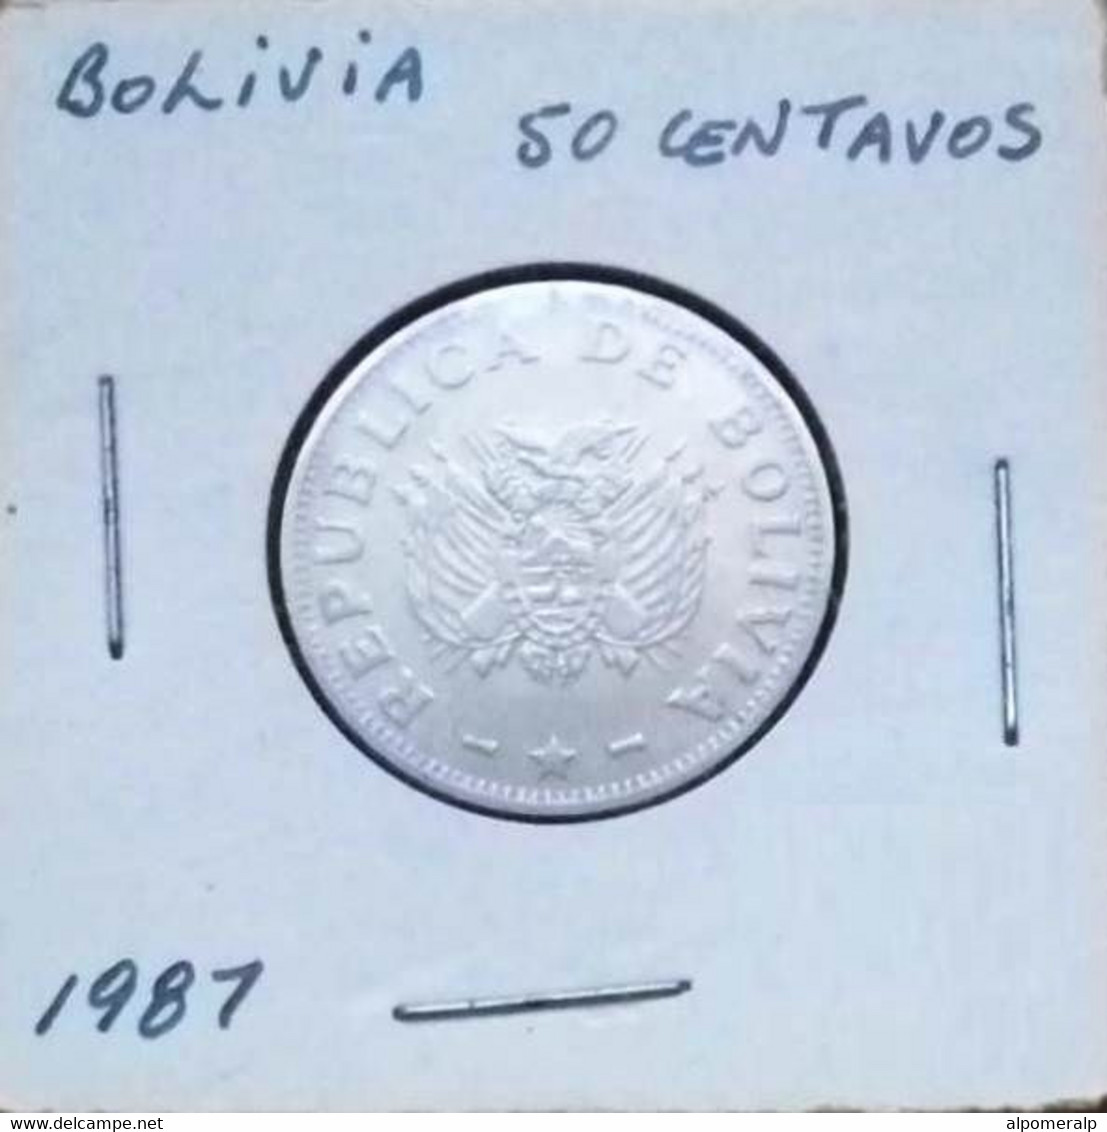 Bolivia 1987 - 50 Centavos - Bolivia